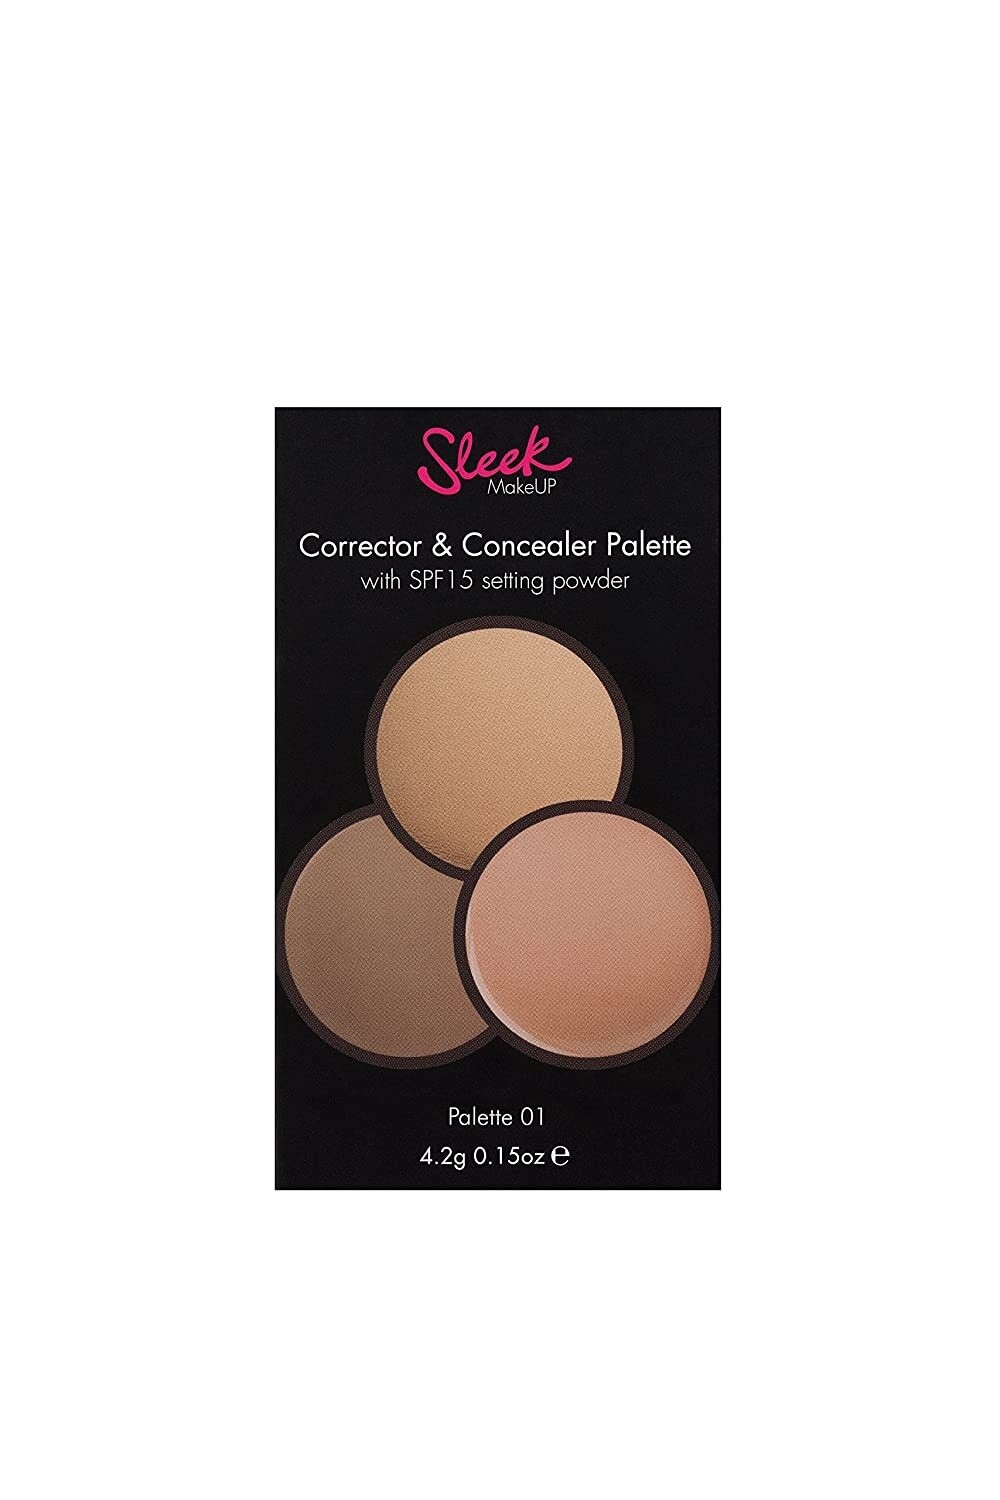 Sleek Makeup Corrector & Concealer Palette- Palette 01-355